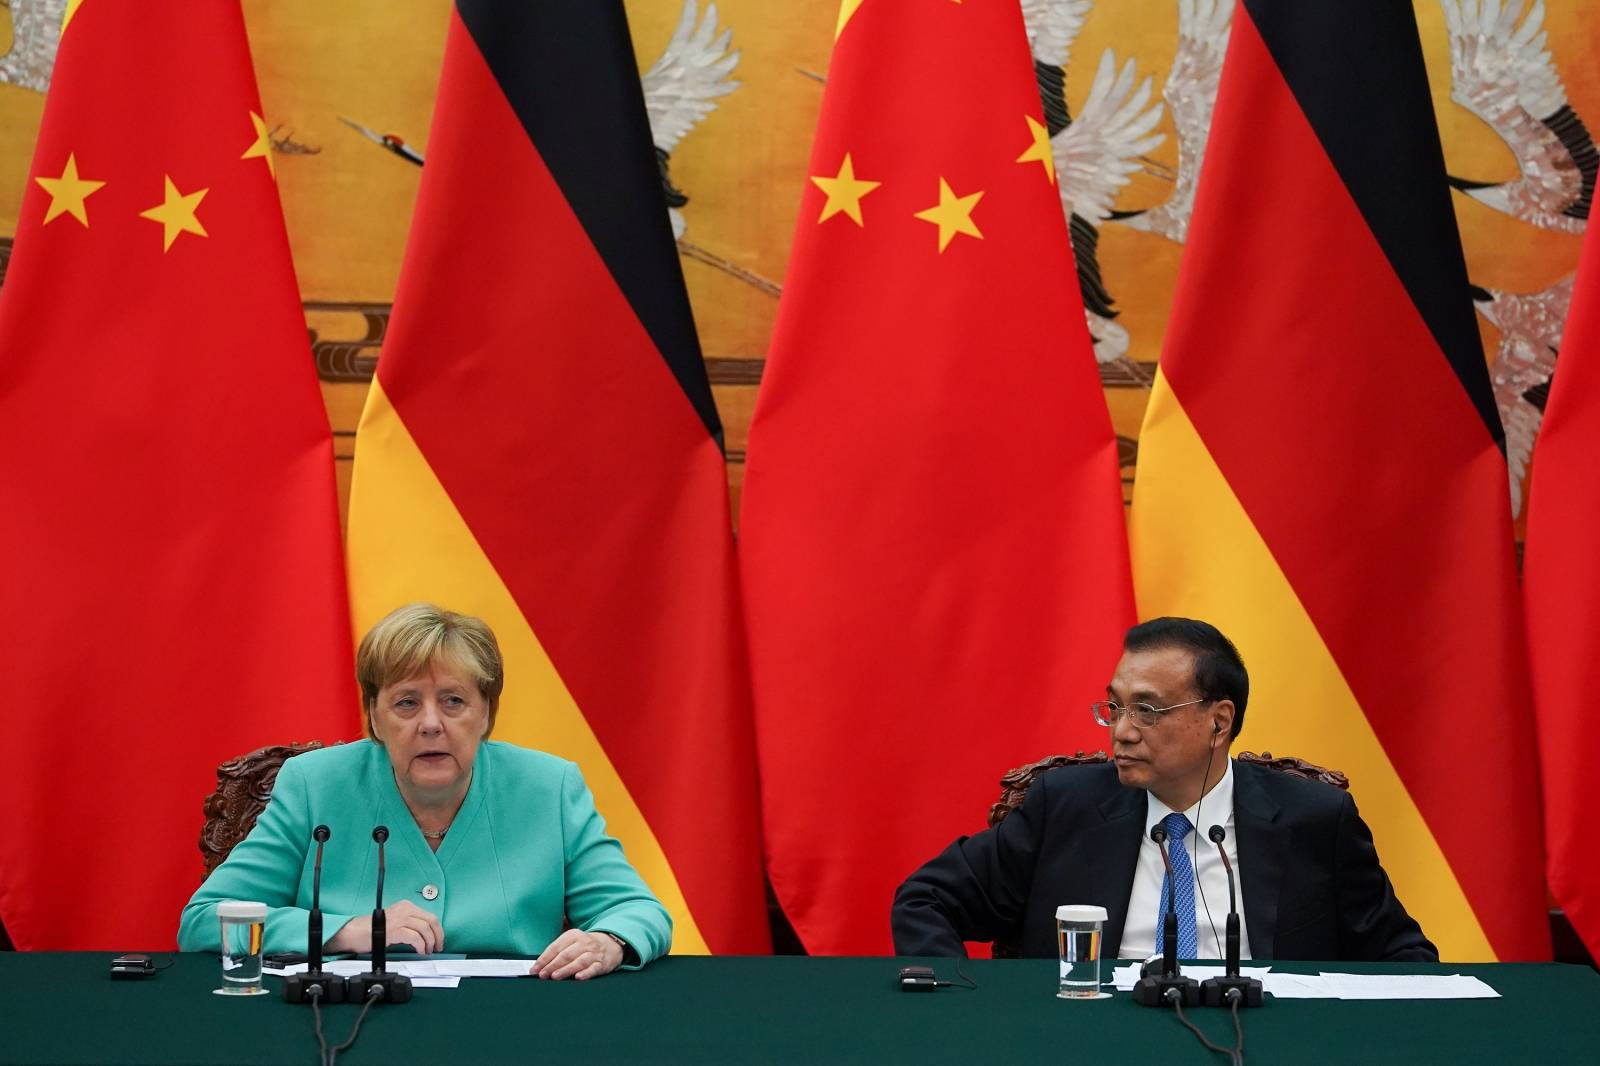 German Chancellor Angela Merkel visits China